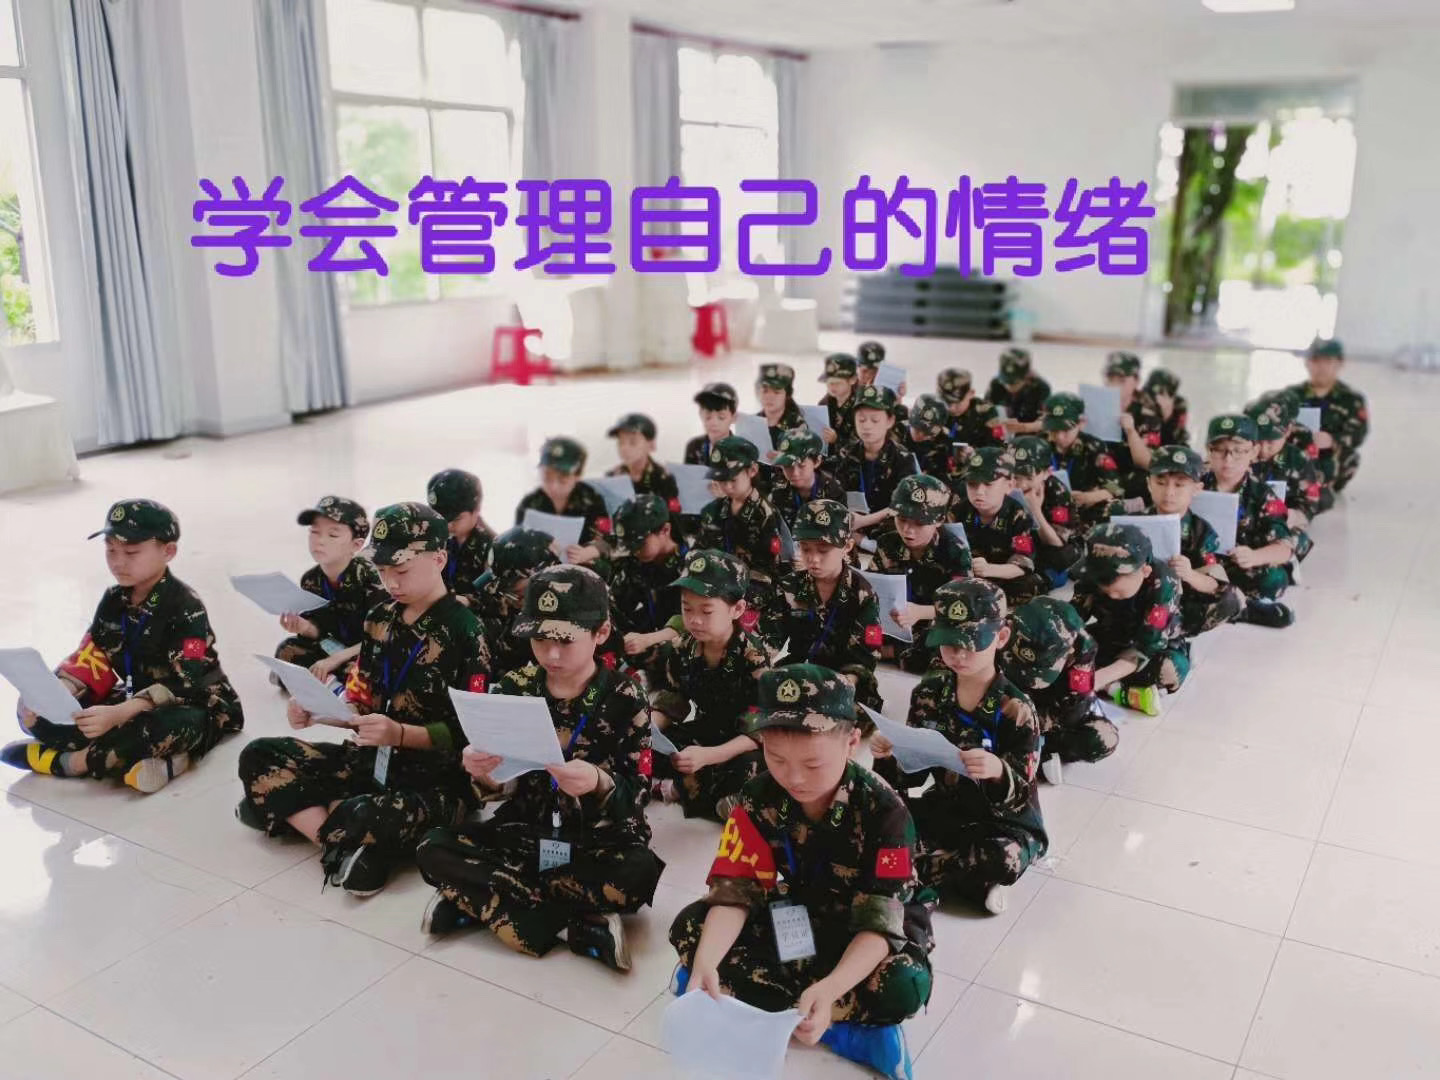 广州奥德曼夏令营亲子活动 上海吃饭住宿开会一条龙服务